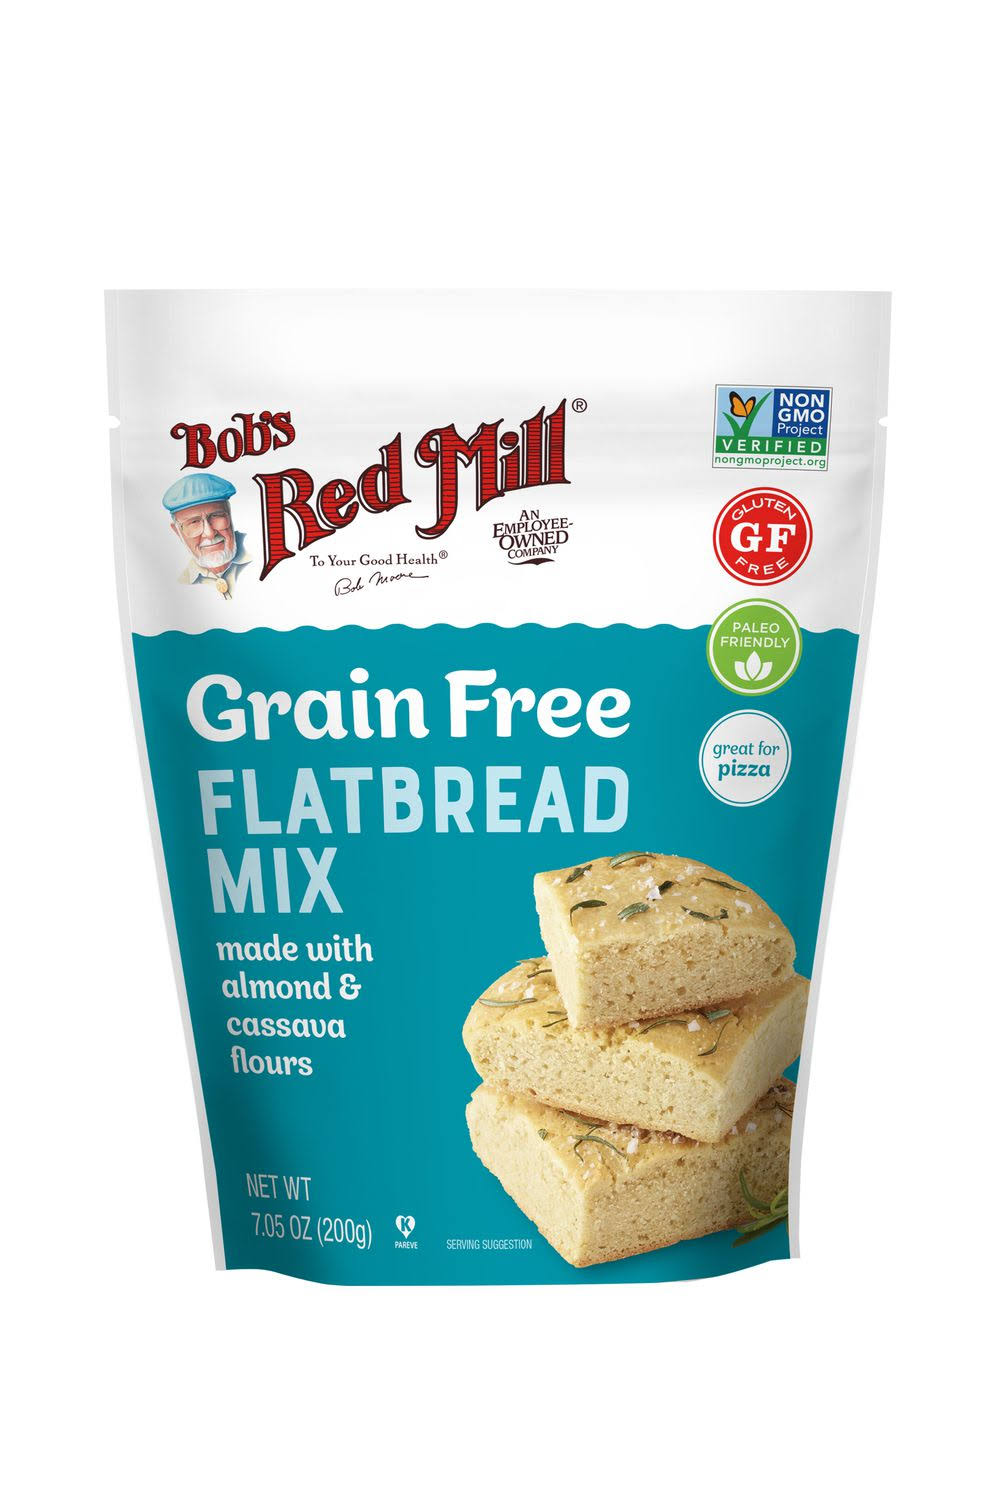 Bob's Red Mill Flatbread Mix, Grain Free - 7.05 oz